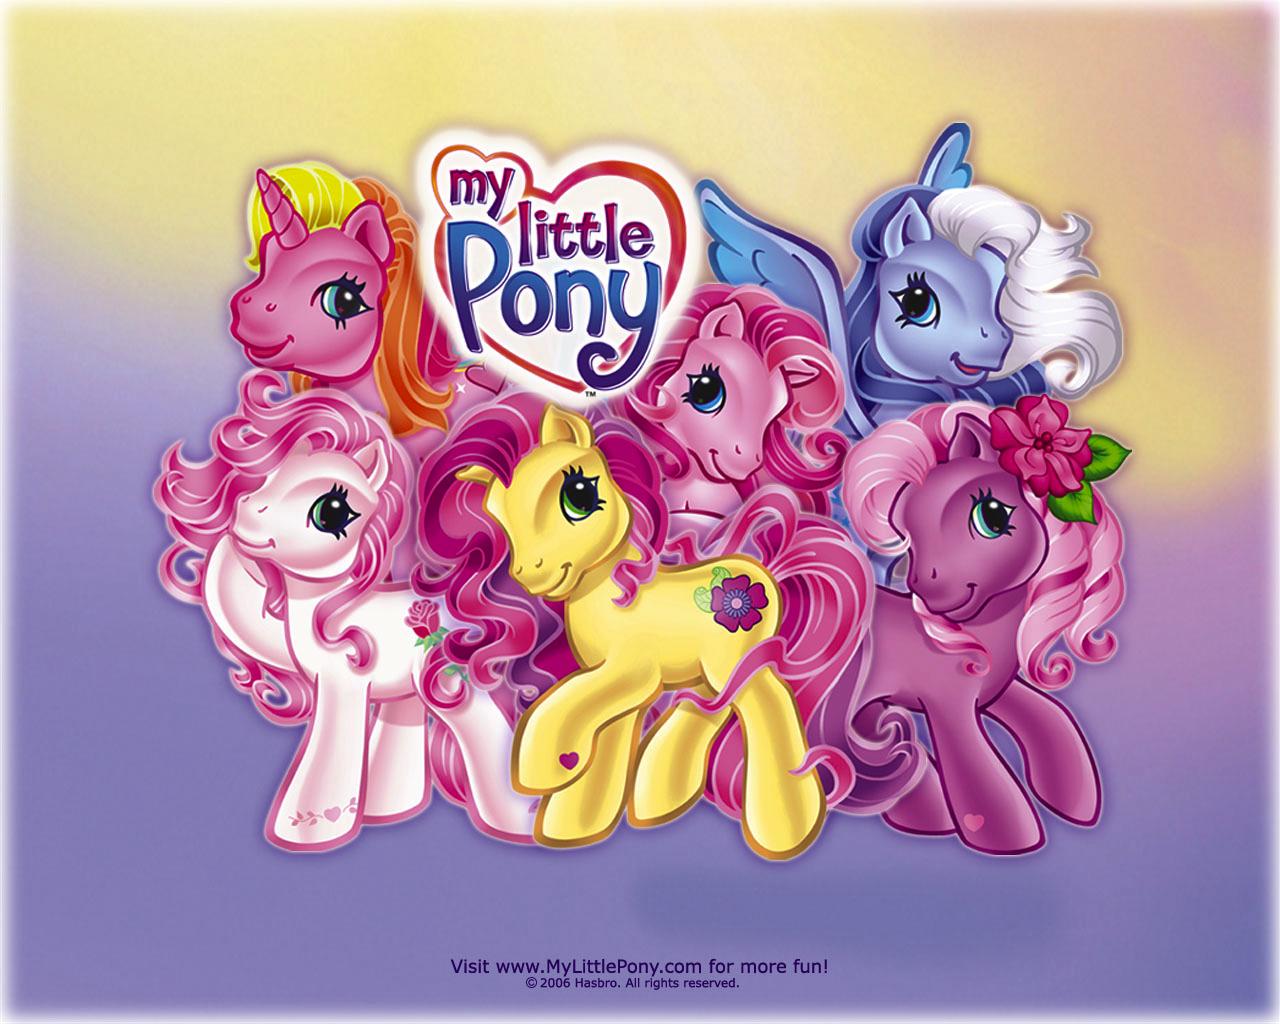 My Little Pony - Old My Little Pony - HD Wallpaper 